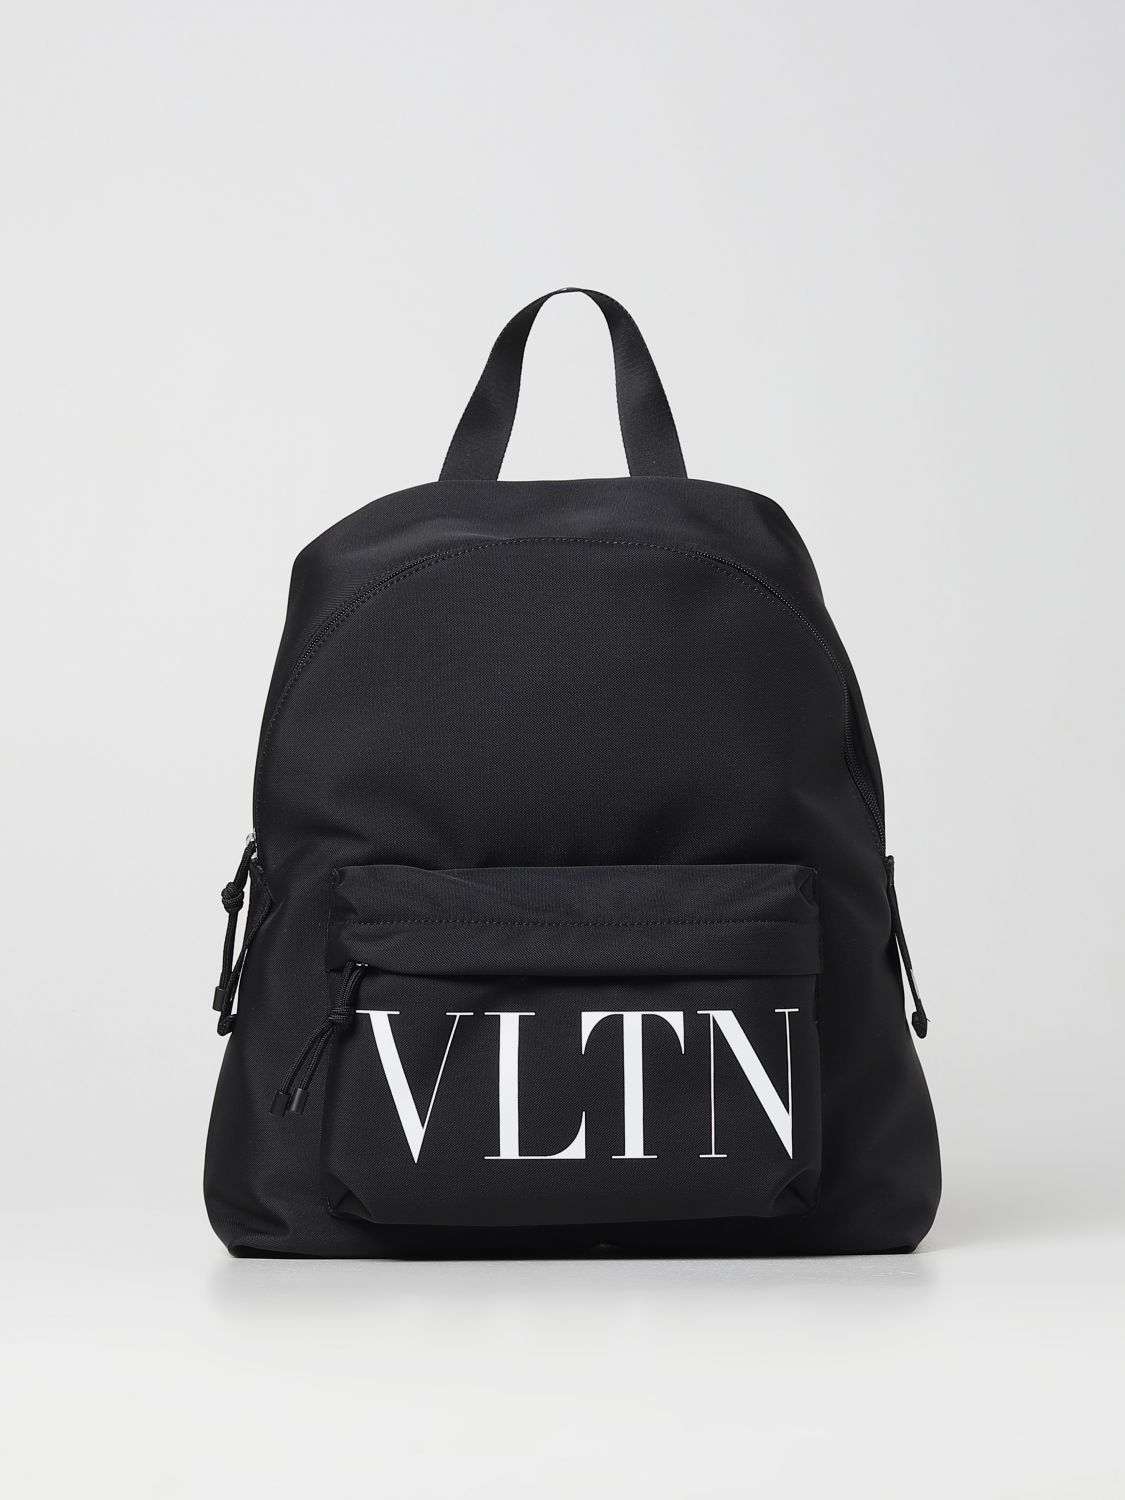 VALENTINO GARAVANI: VLTN backpack in nylon - Black  Valentino Garavani  backpack 2Y2B0993YHS online at